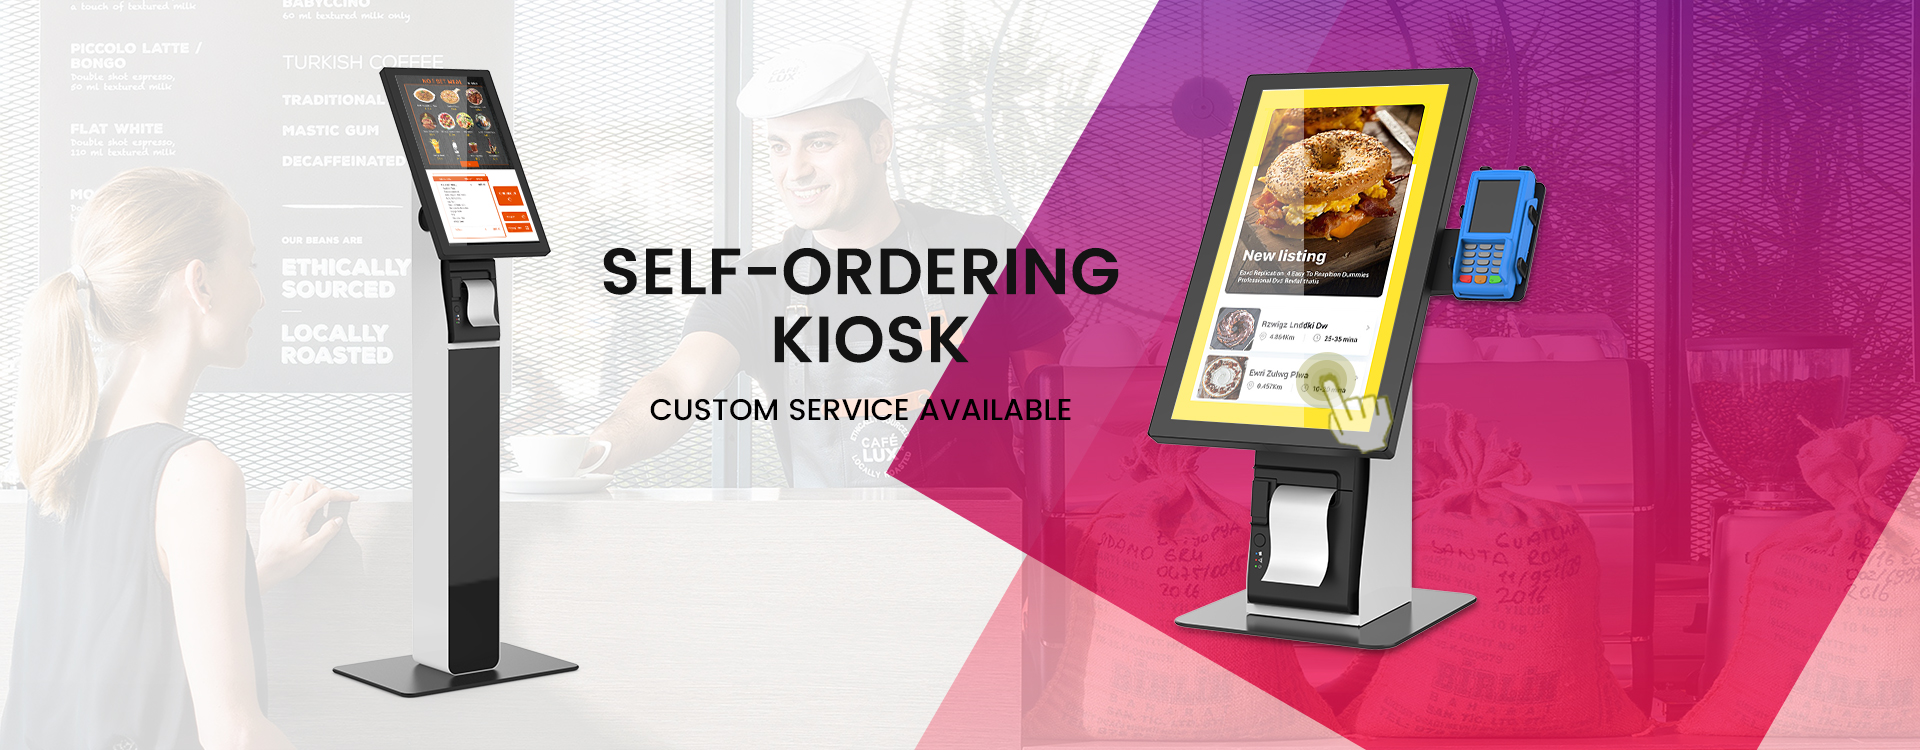 Self-ordering kiosk kh2100-floor standing or countertop